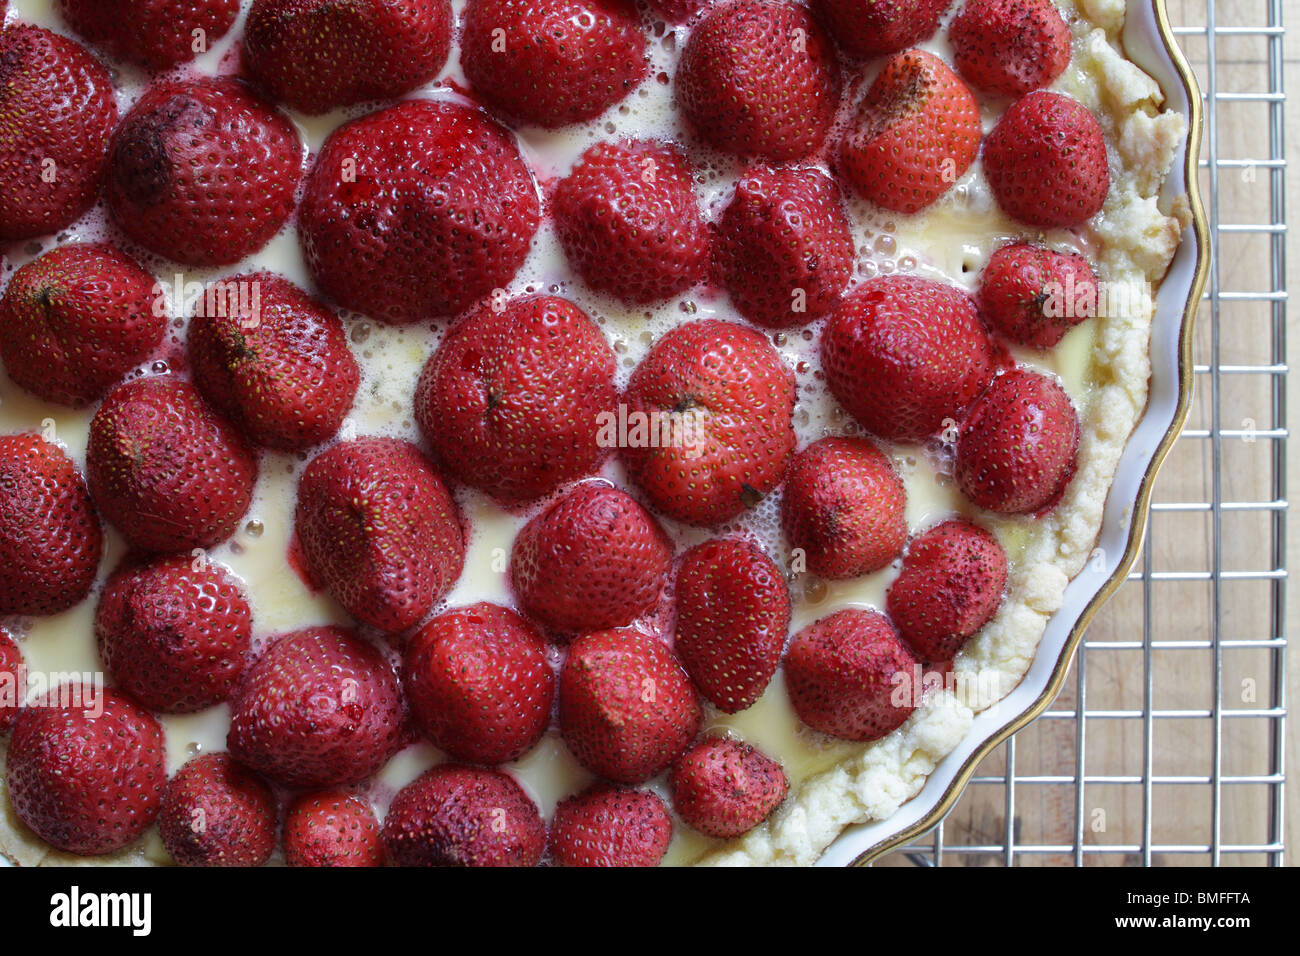 Strawberry tart Stock Photo